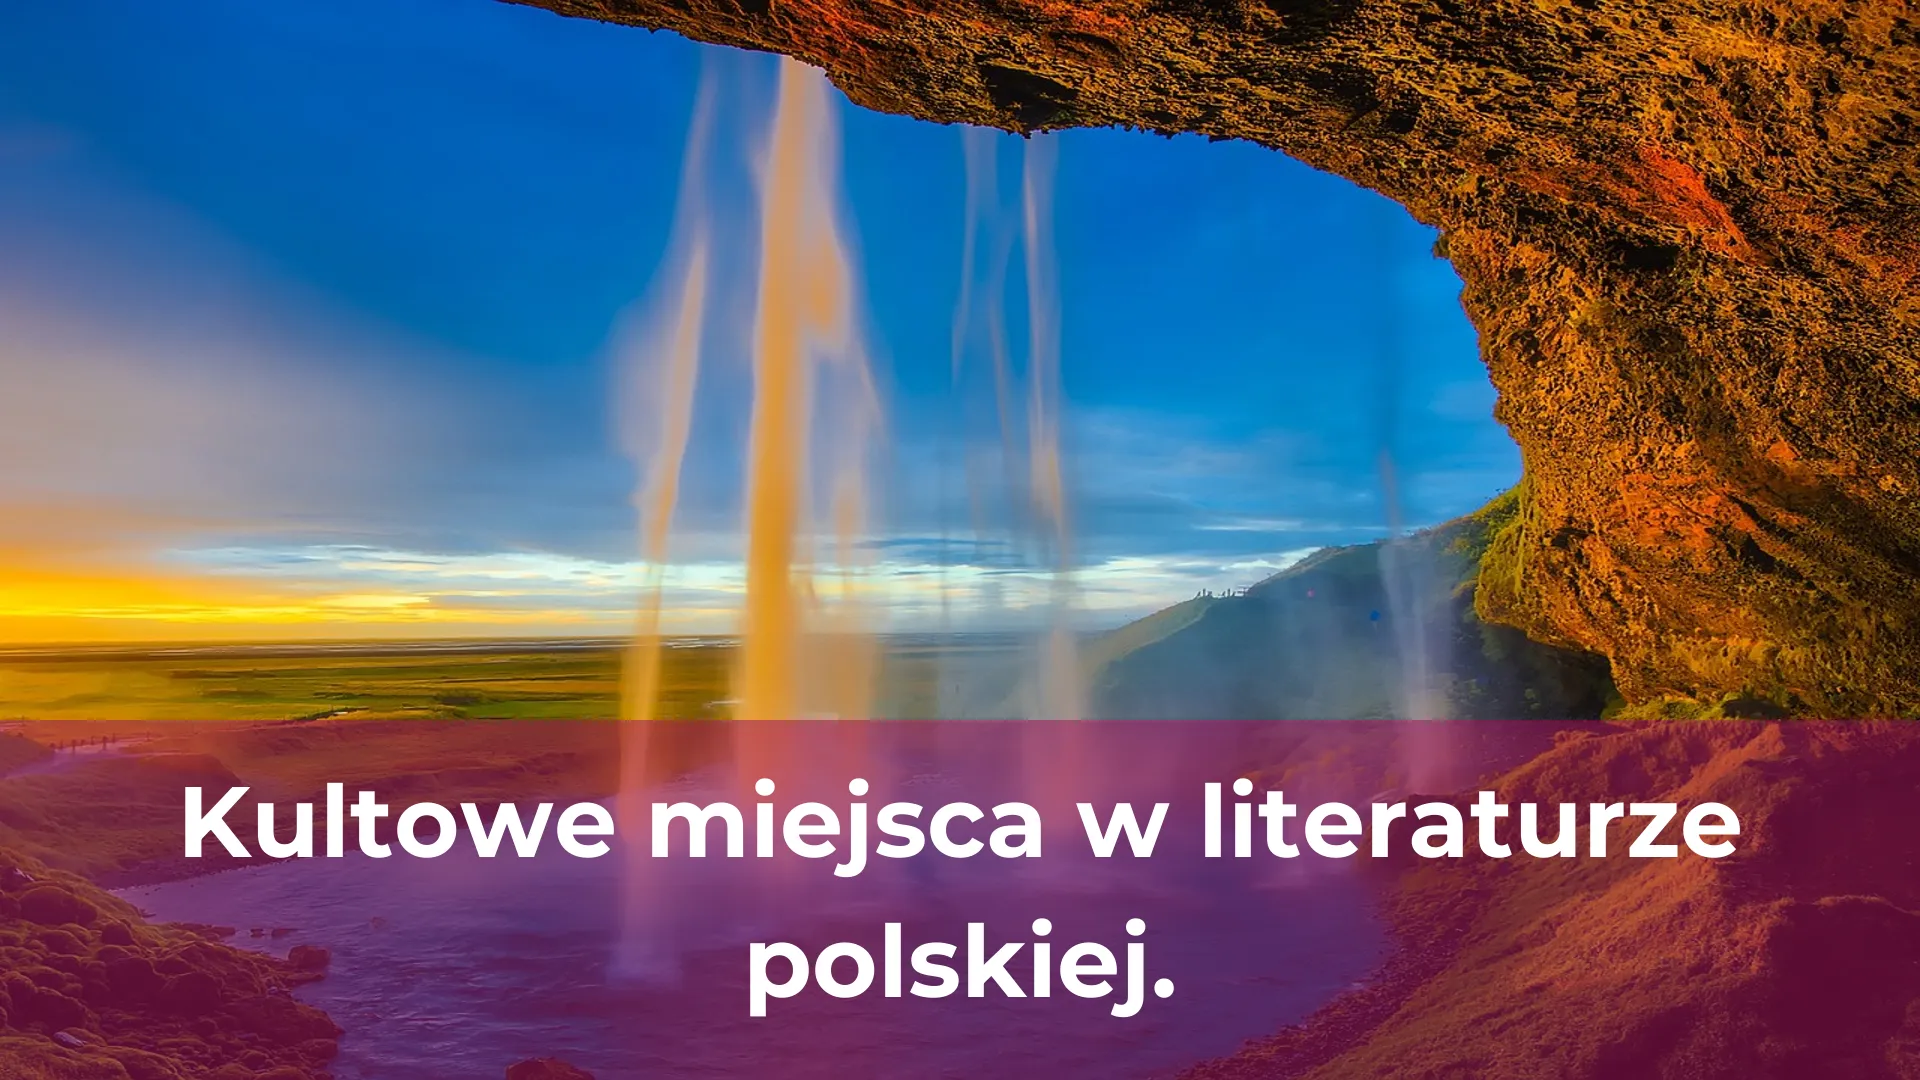 Kultowe miejsca w literaturze polskiej